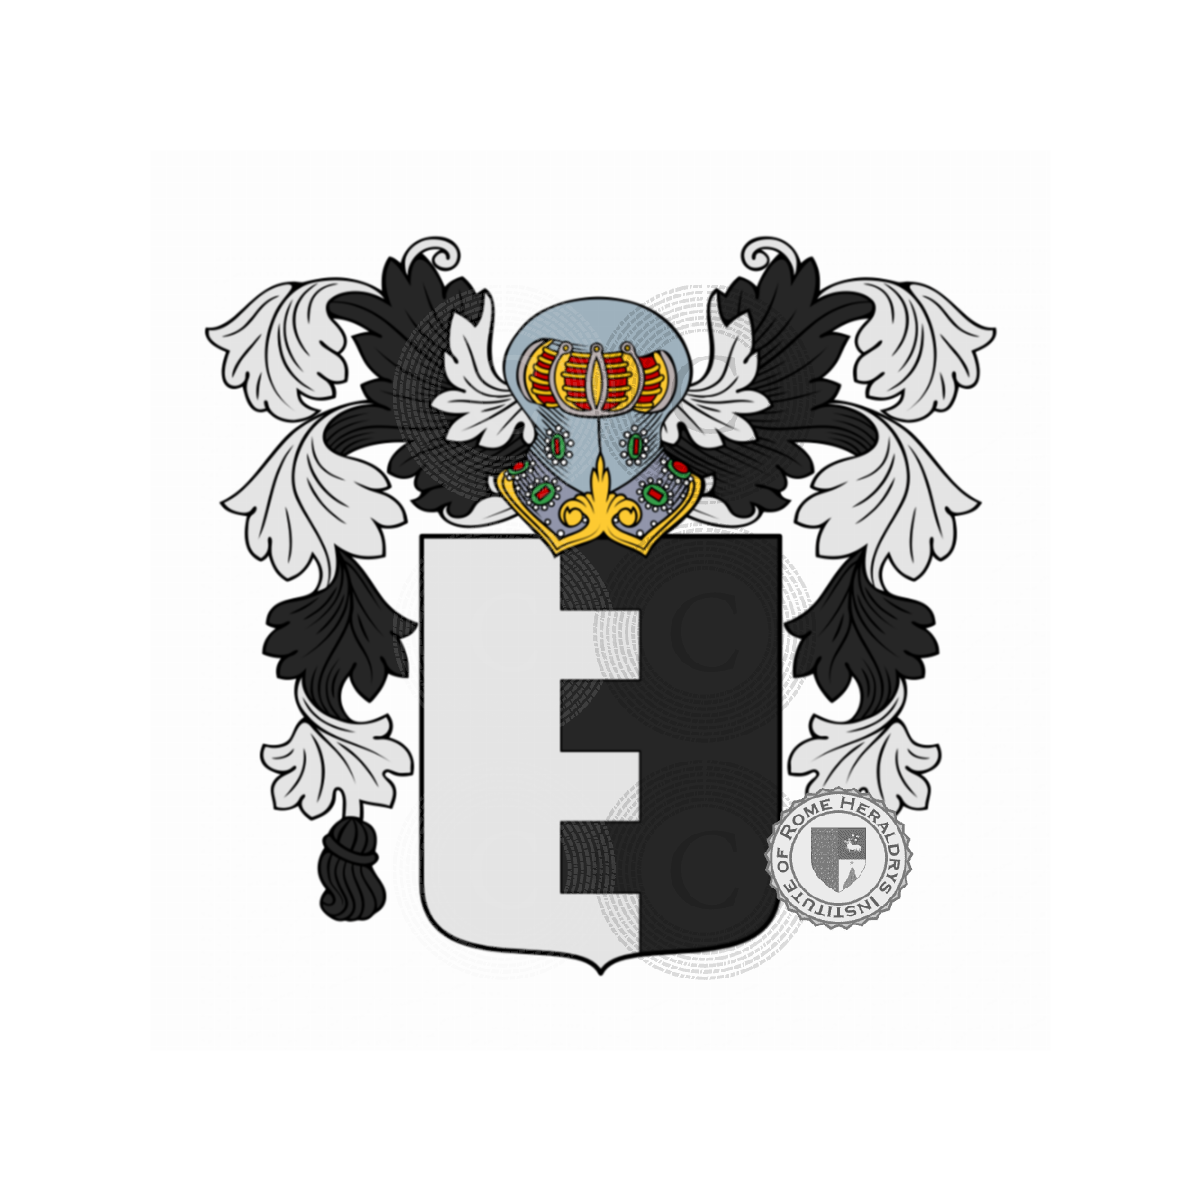 Wappen der FamilieGregorio, De Gregorio